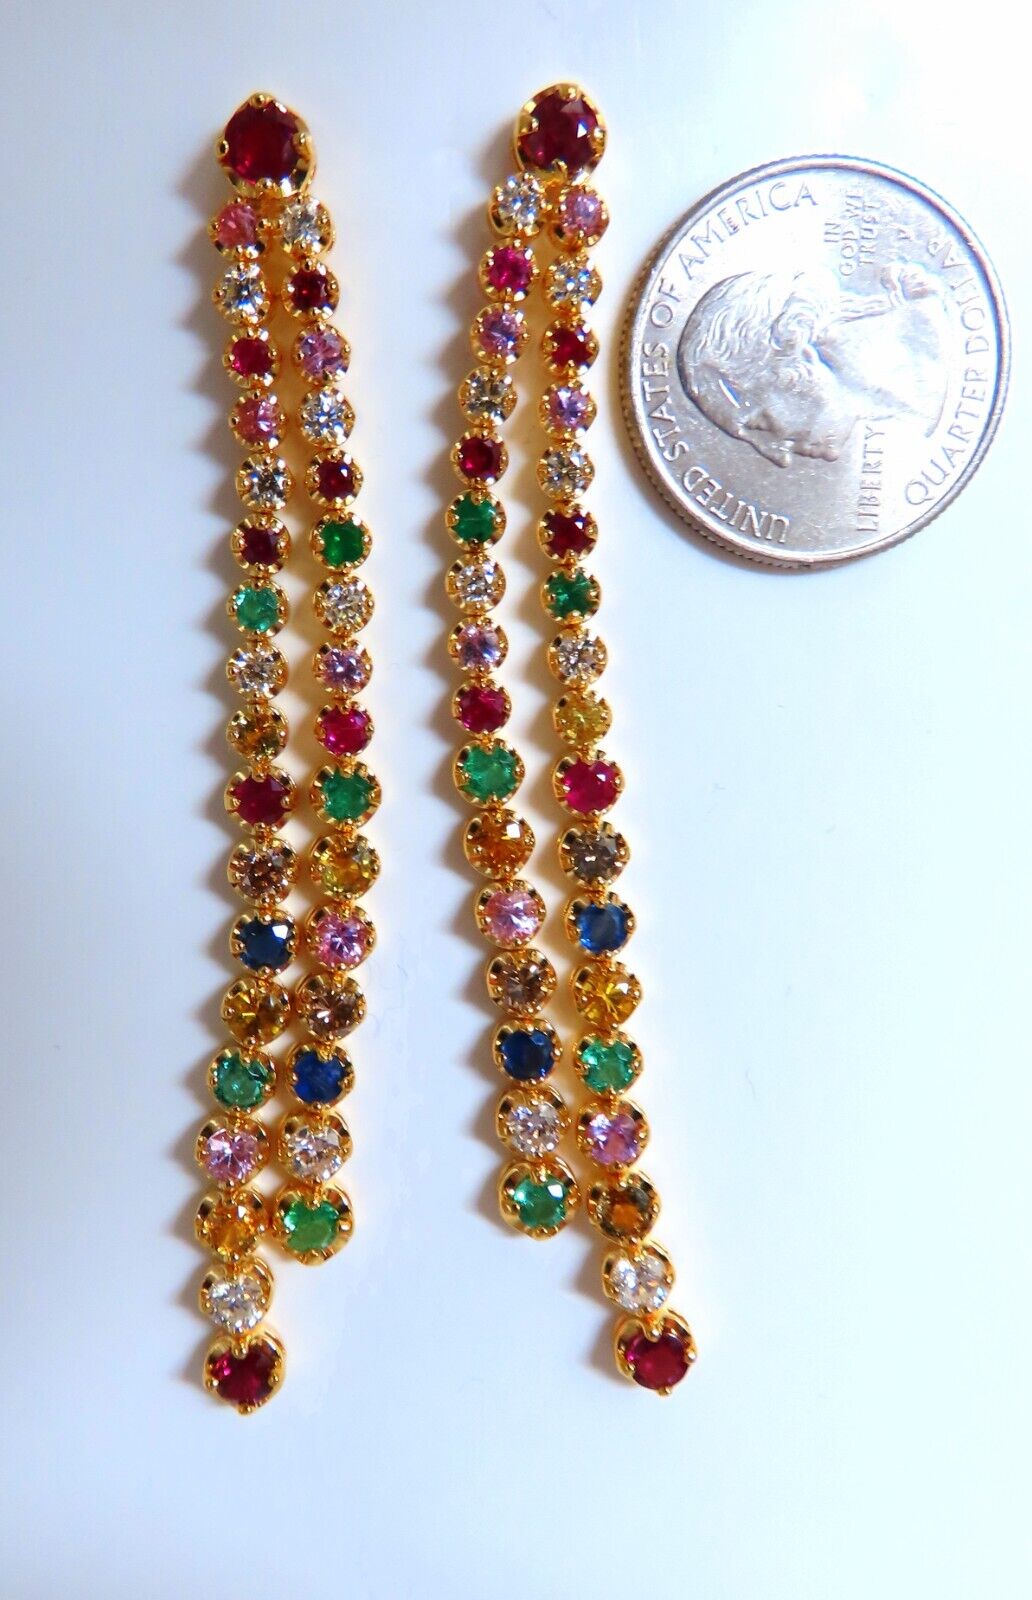 6ct Sapphire Emerald Ruby Diamonds Double Tier Dangle Earrings 14kt H/Vs